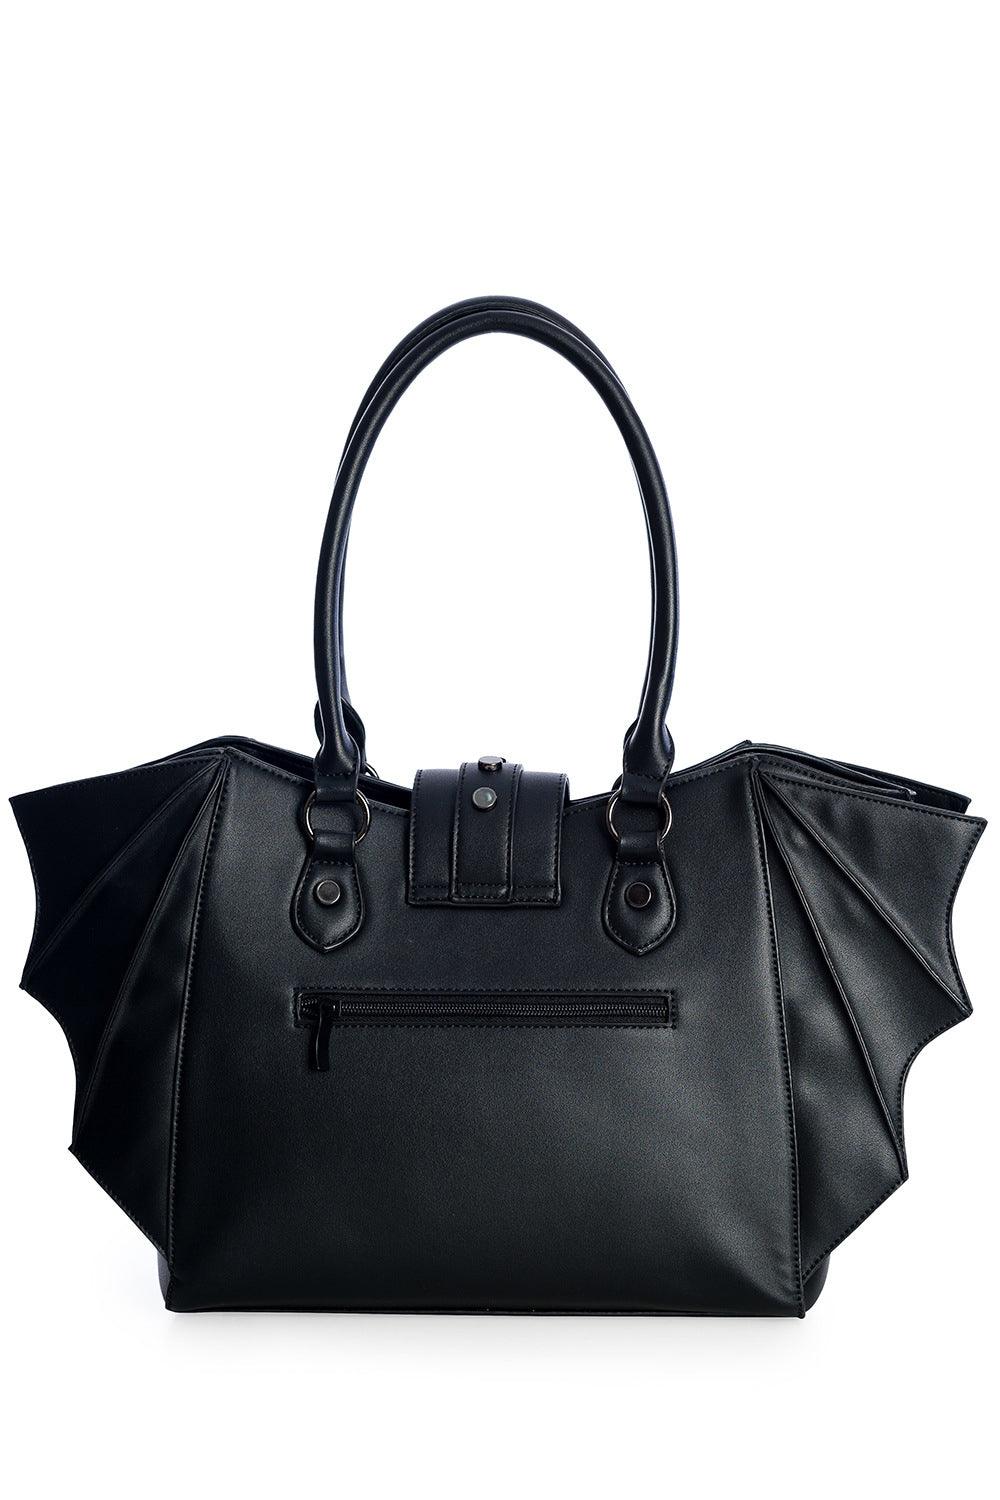 Banned Apparel Annabelle Handbag - VampireFreaks